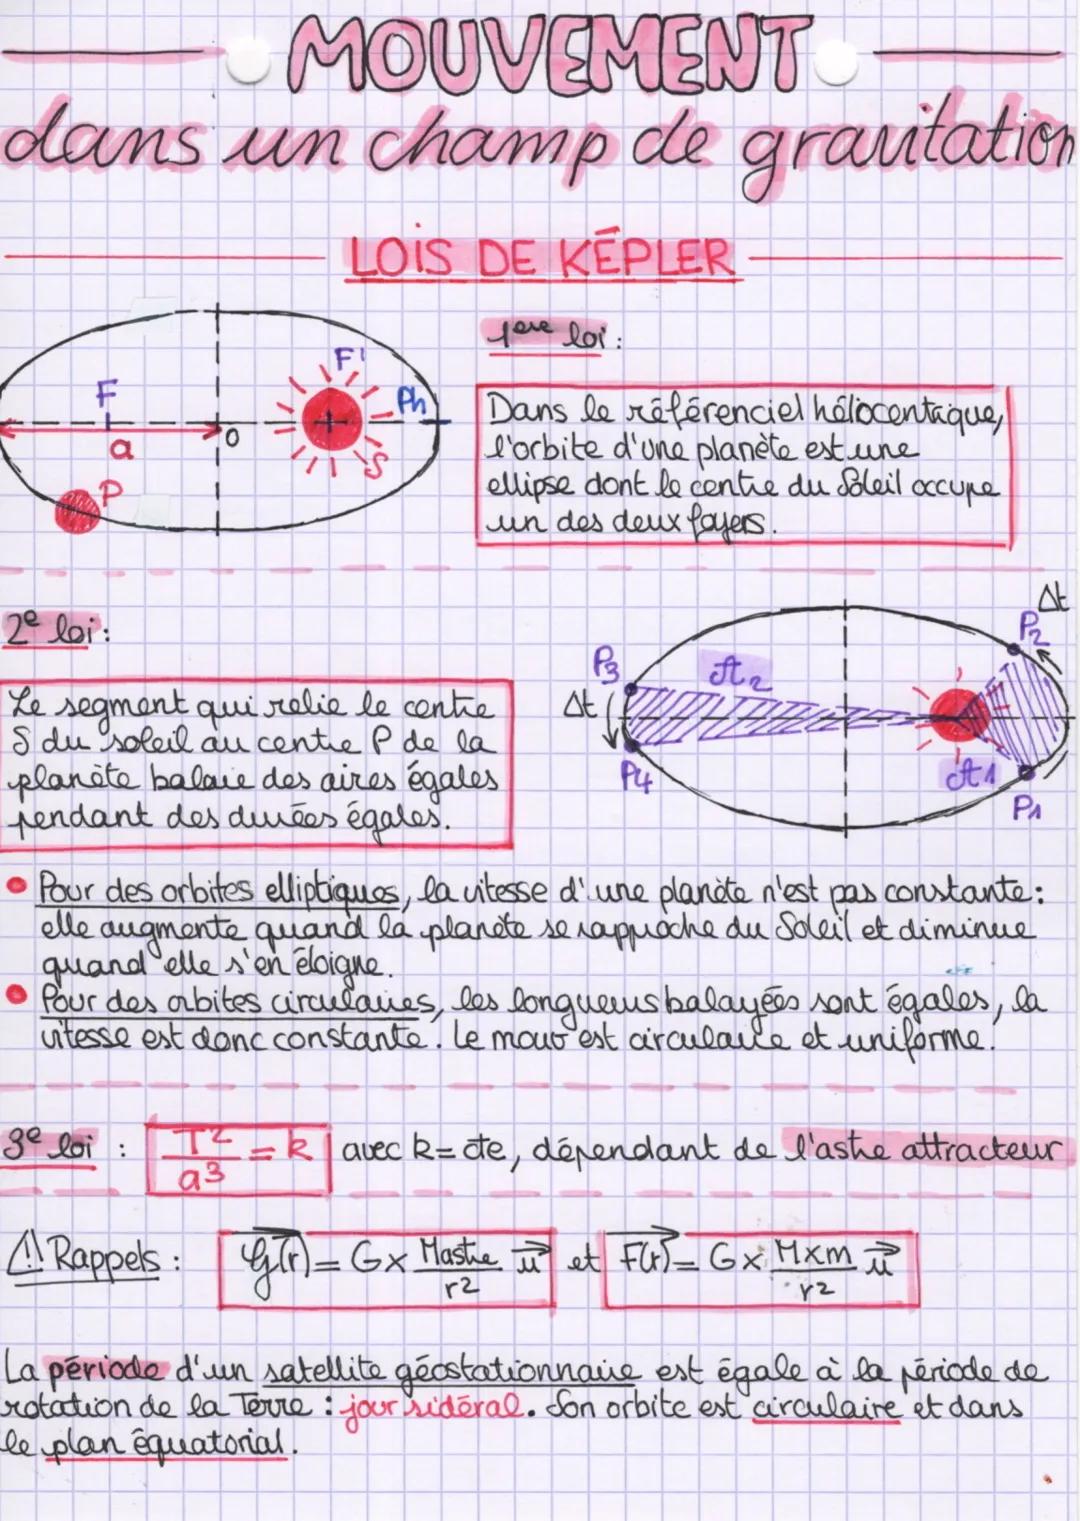 MOUVEMENT
dans un champ de gravitation
F
ರ
P
+
0
7|1
ge loi :
LOIS DE KEPLER-
love loi :
Dans le référenciel holocentaque,
l'orbite d'une pl